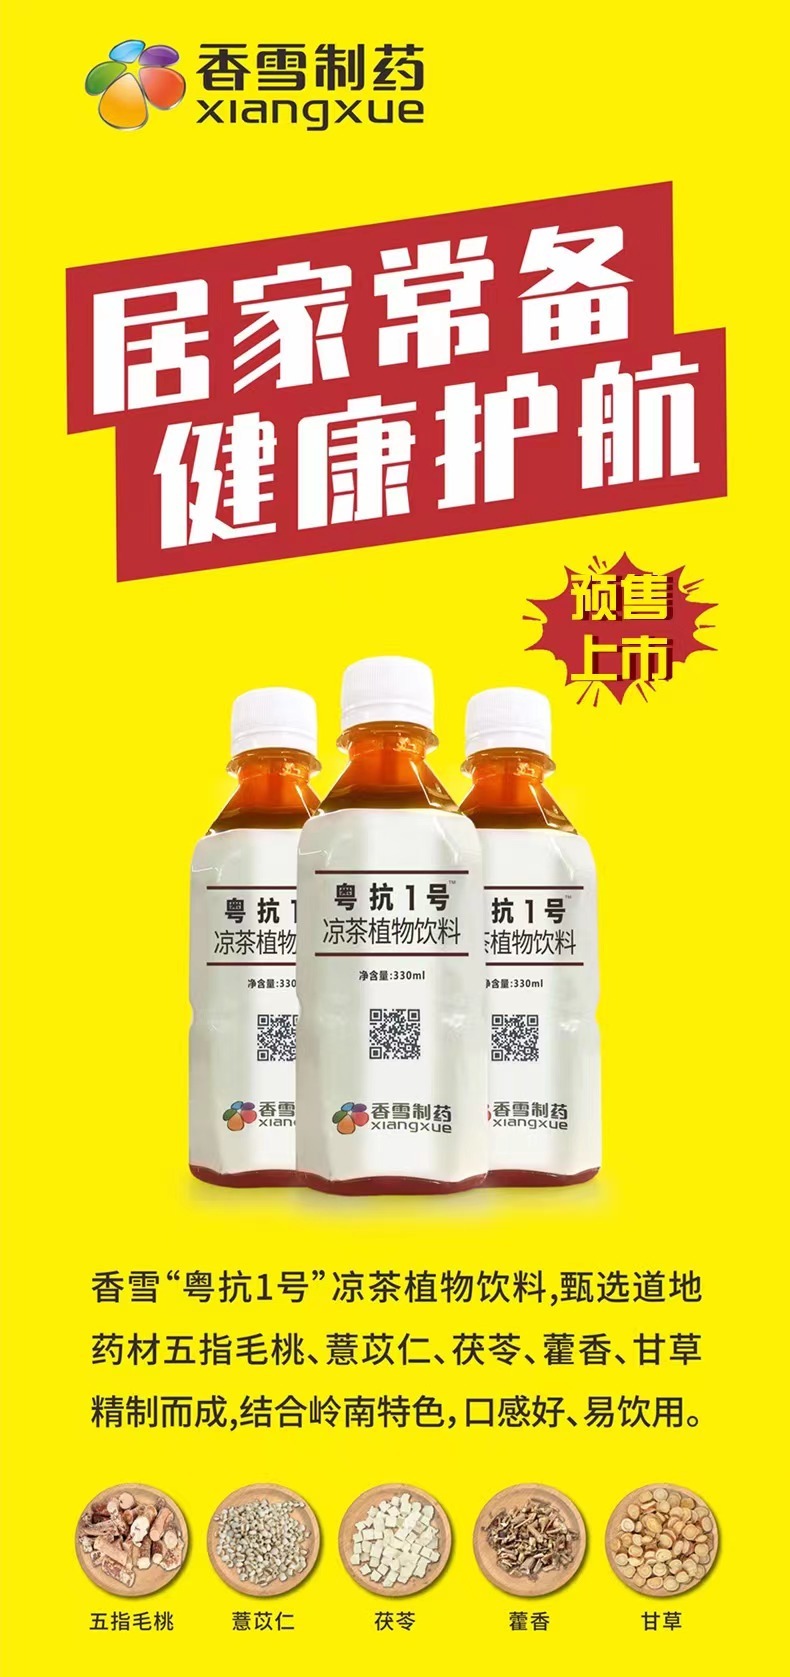 香雪制药自制凉茶宣称能预防新冠肺炎被罚30万元 央广网 